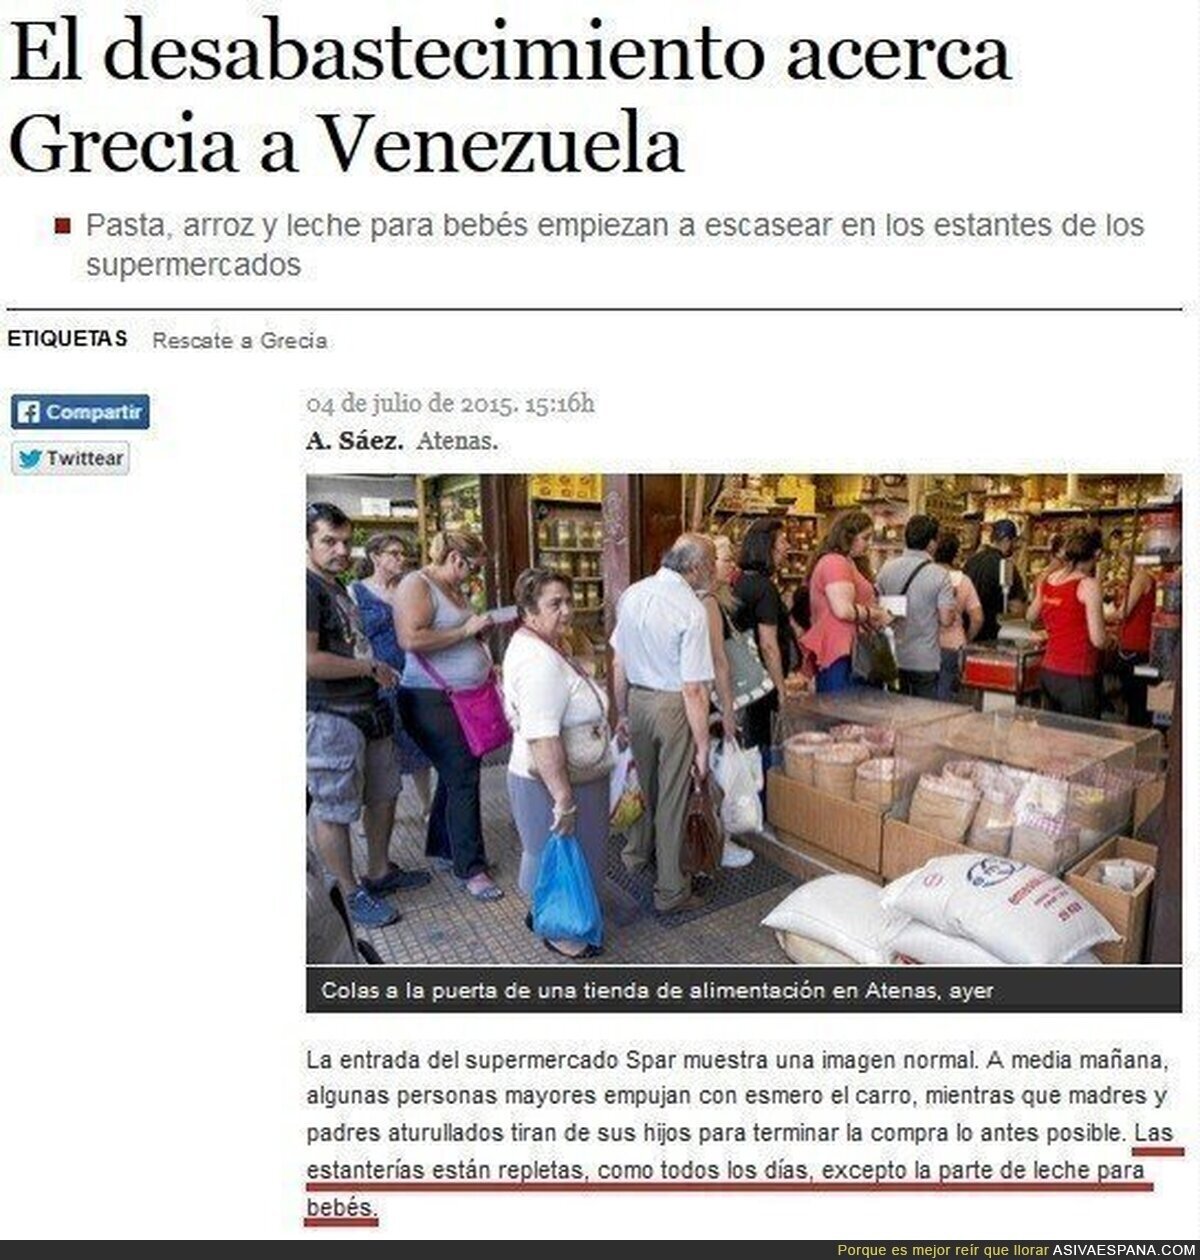 Periodicos españoles difunden imagenes manipuladas de desabastecimiento en supermercados de Grecia